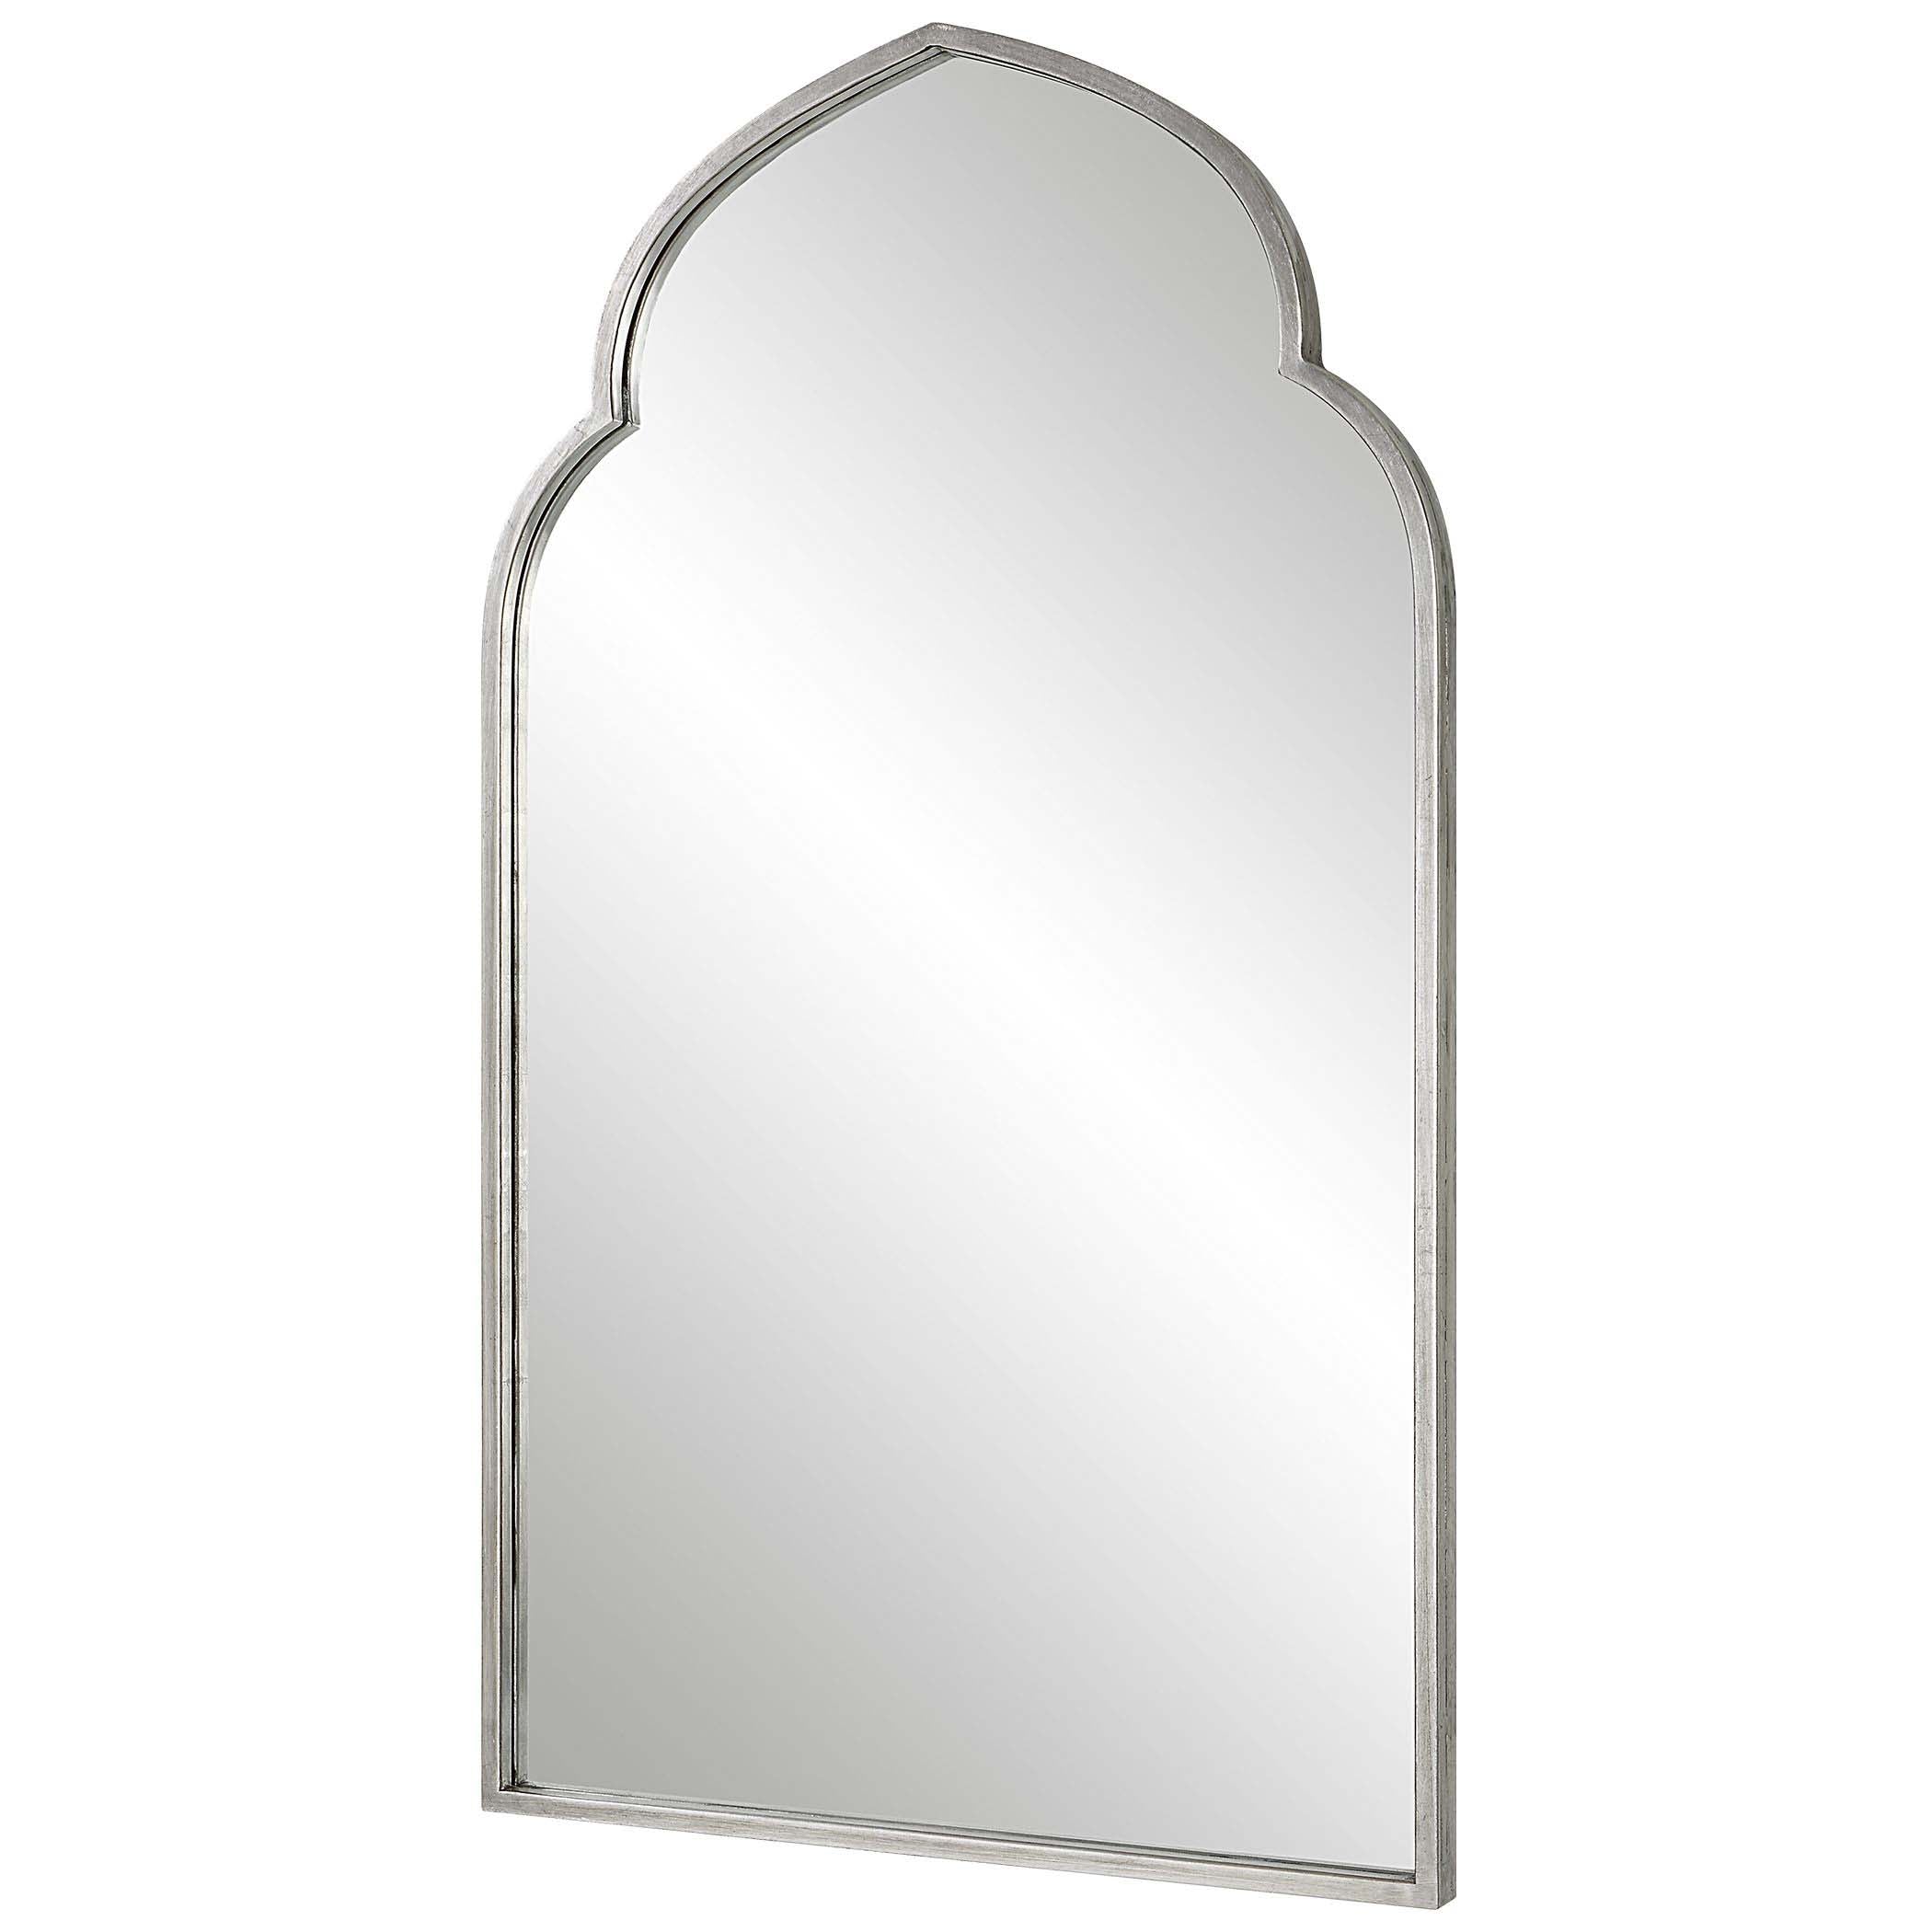 Decor Market Mirror - Soft Silver Finish